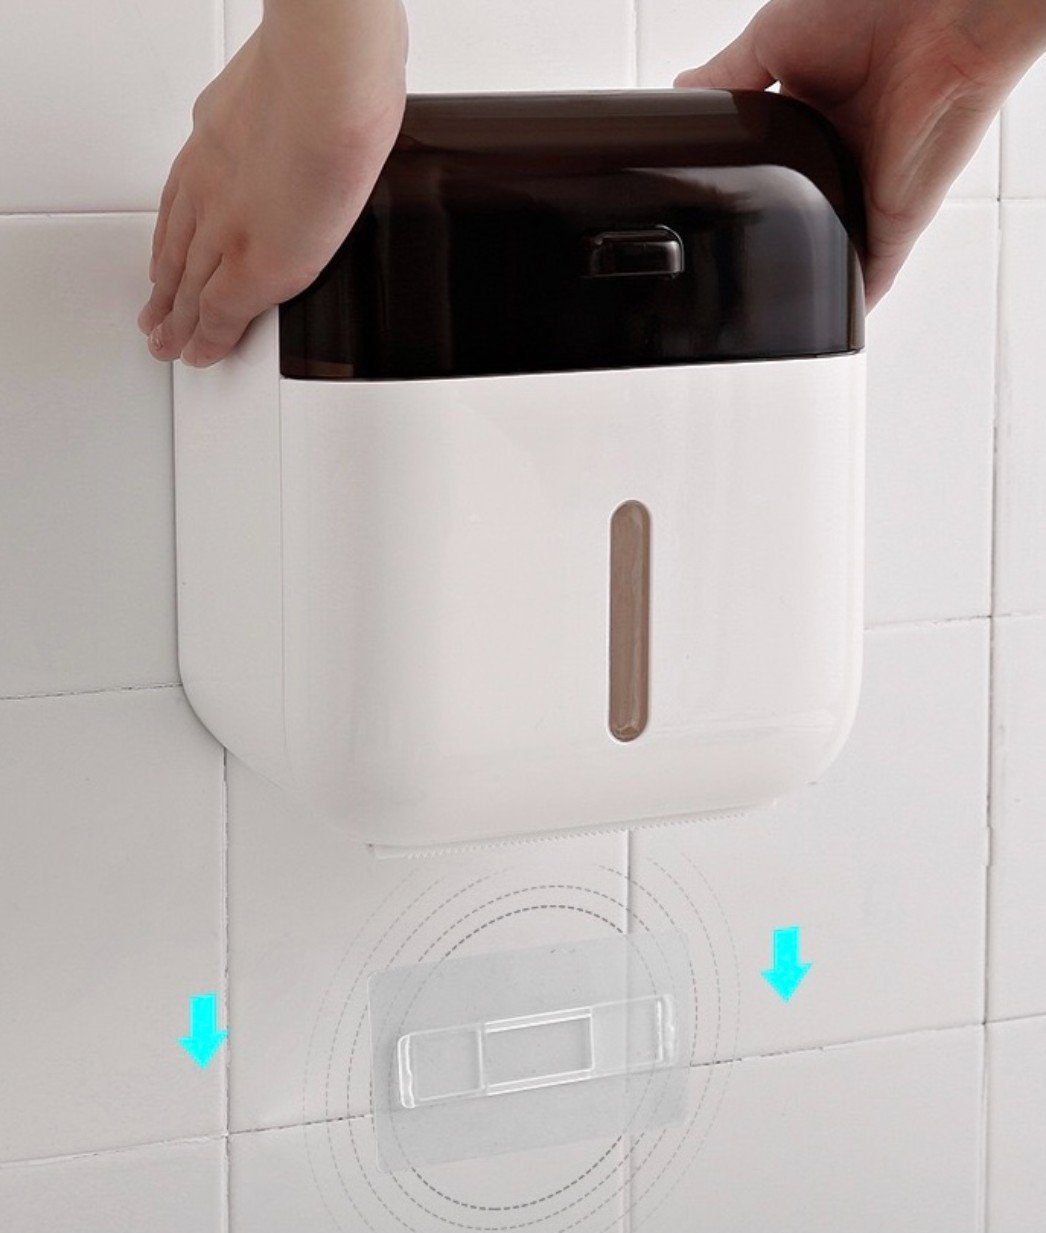 Selbstklebend (1) Braun & Schublade Handyhalter, Creliv mit Toilettenpapierhalter